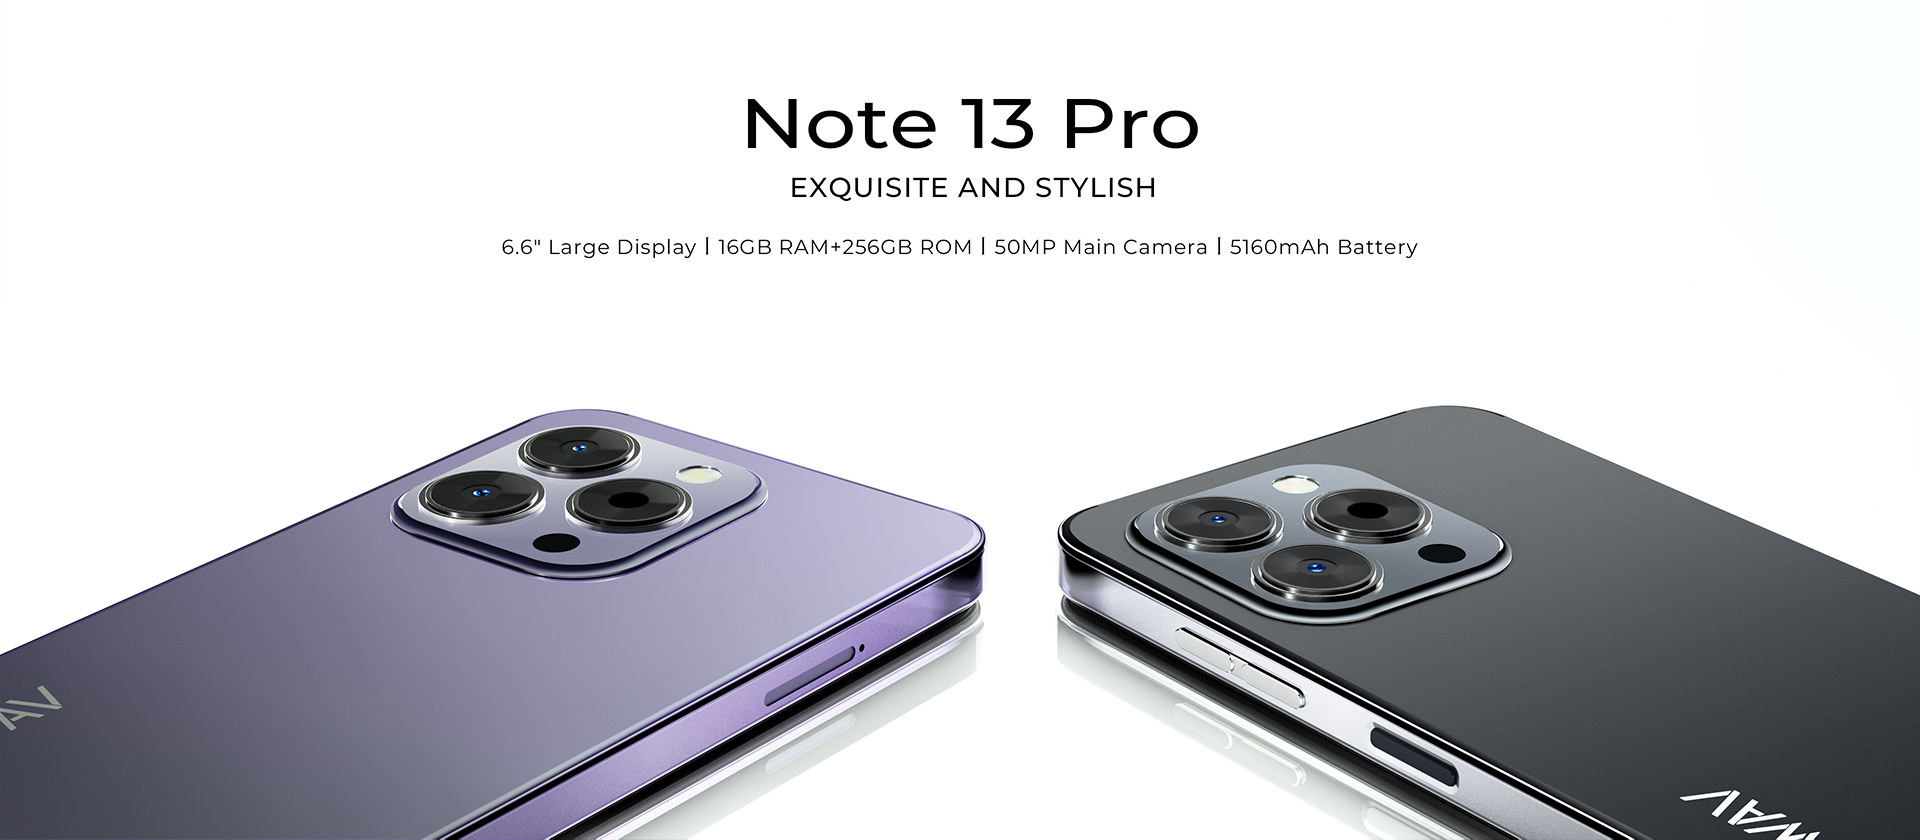 HOTWAV Note 13 Pro: parece un iPhone entrecerrado